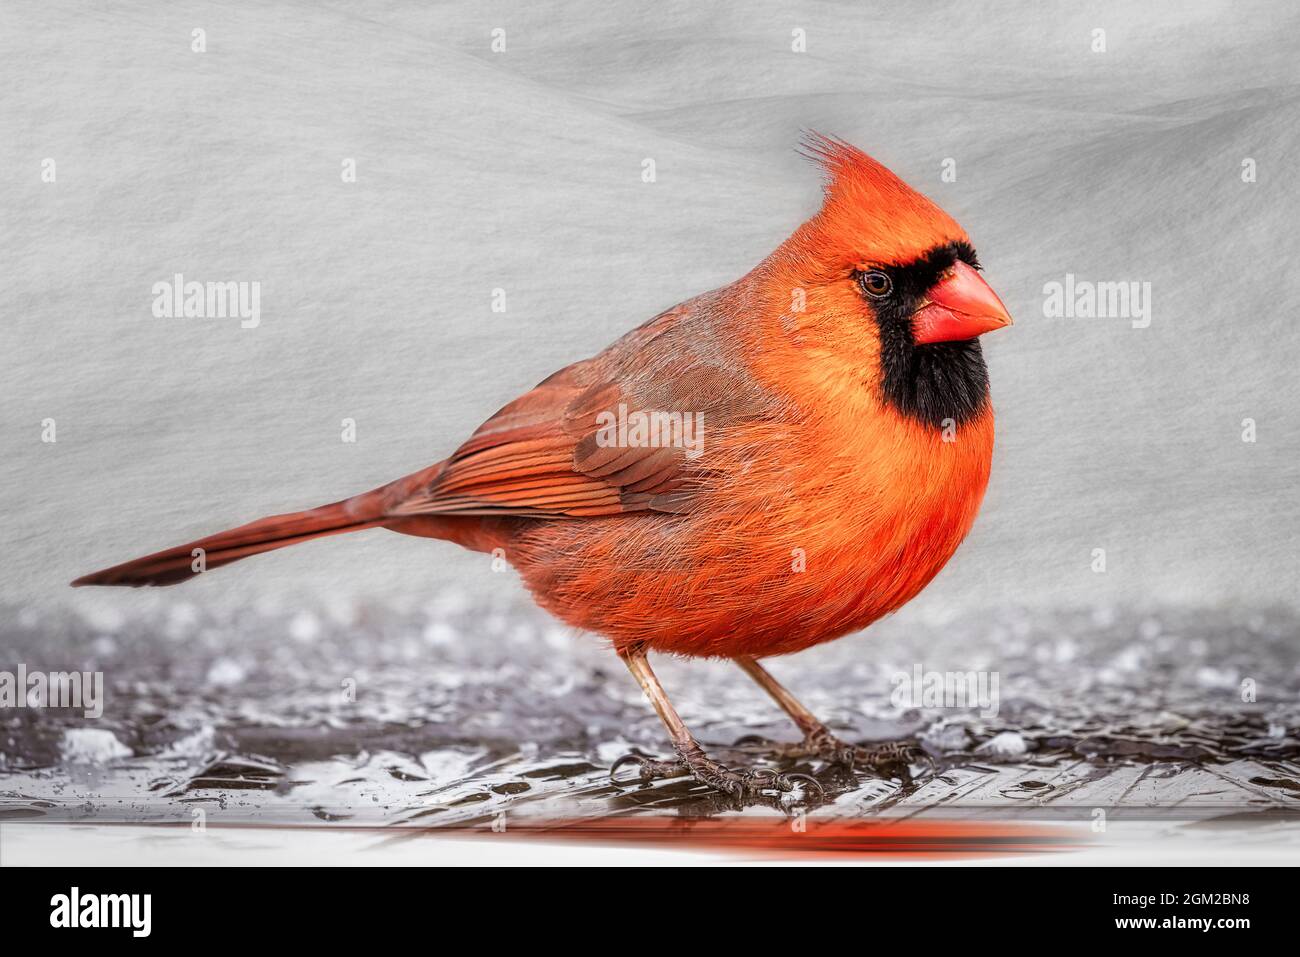 Northern Cardinal - leuchtend roter Rüde Norhtern Cardinal songbird bei Schnee im Winter. Dieses Bild ist auch in Schwarzweiß verfügbar. Zum Anzeigen eines Stockfoto